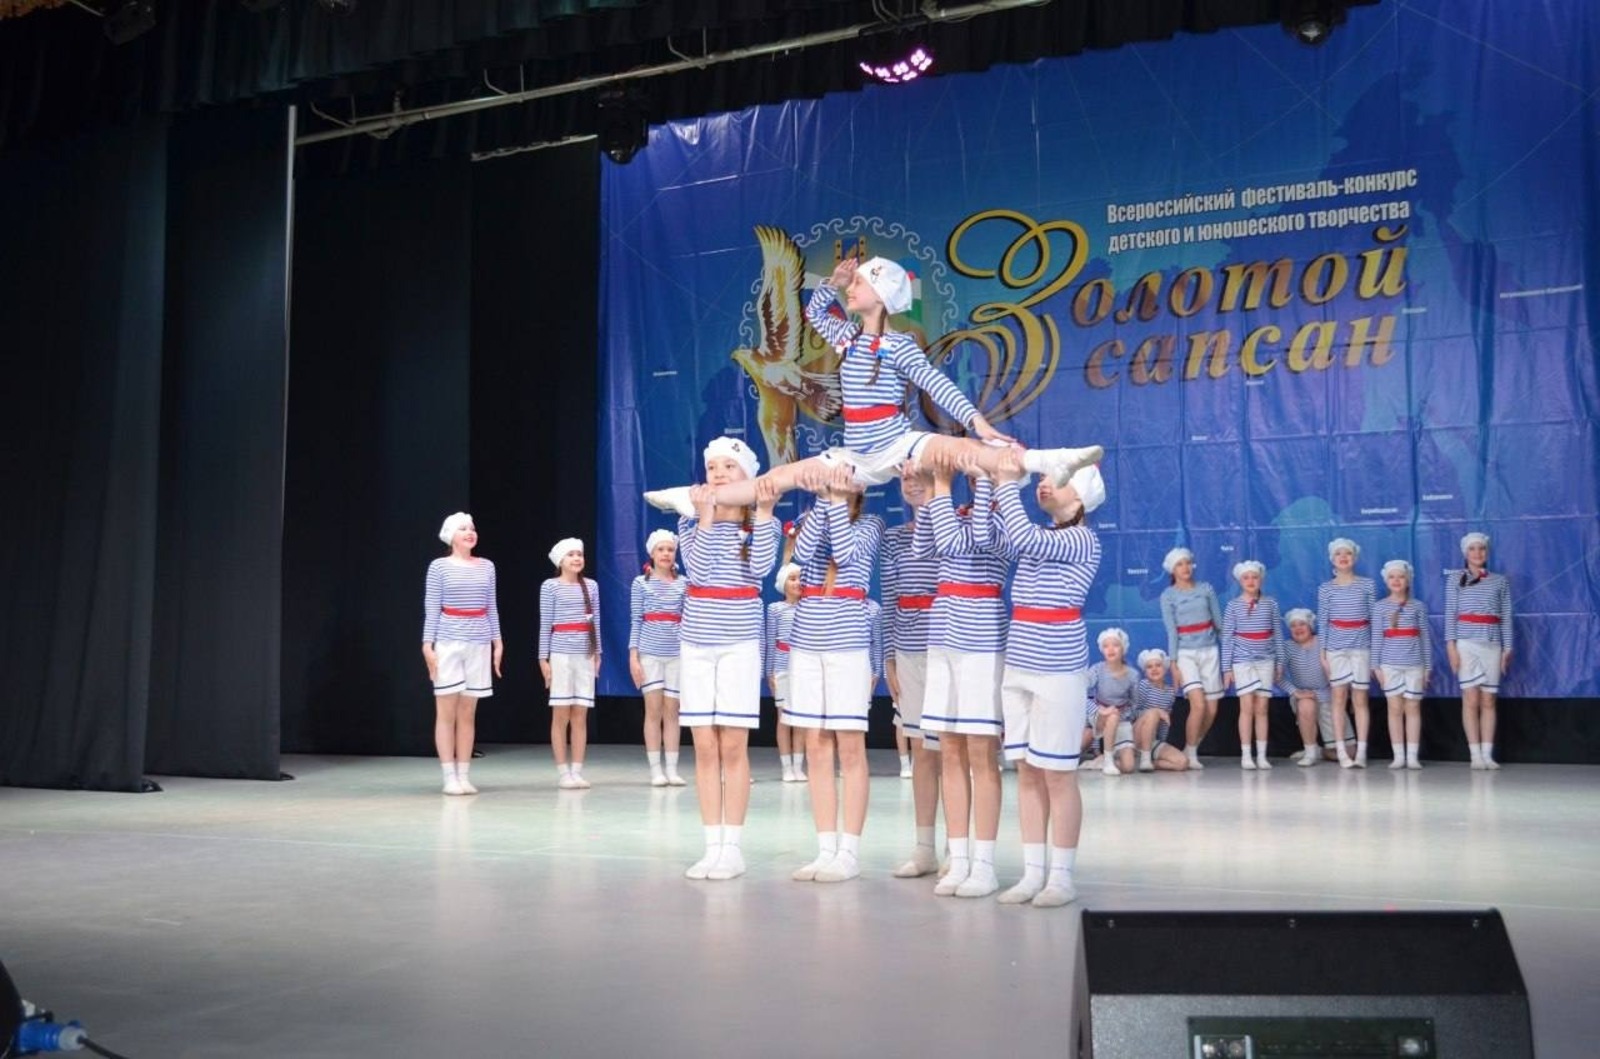 В Башкирии подвели итоги всероссийского конкурса «Золотой сапсан»